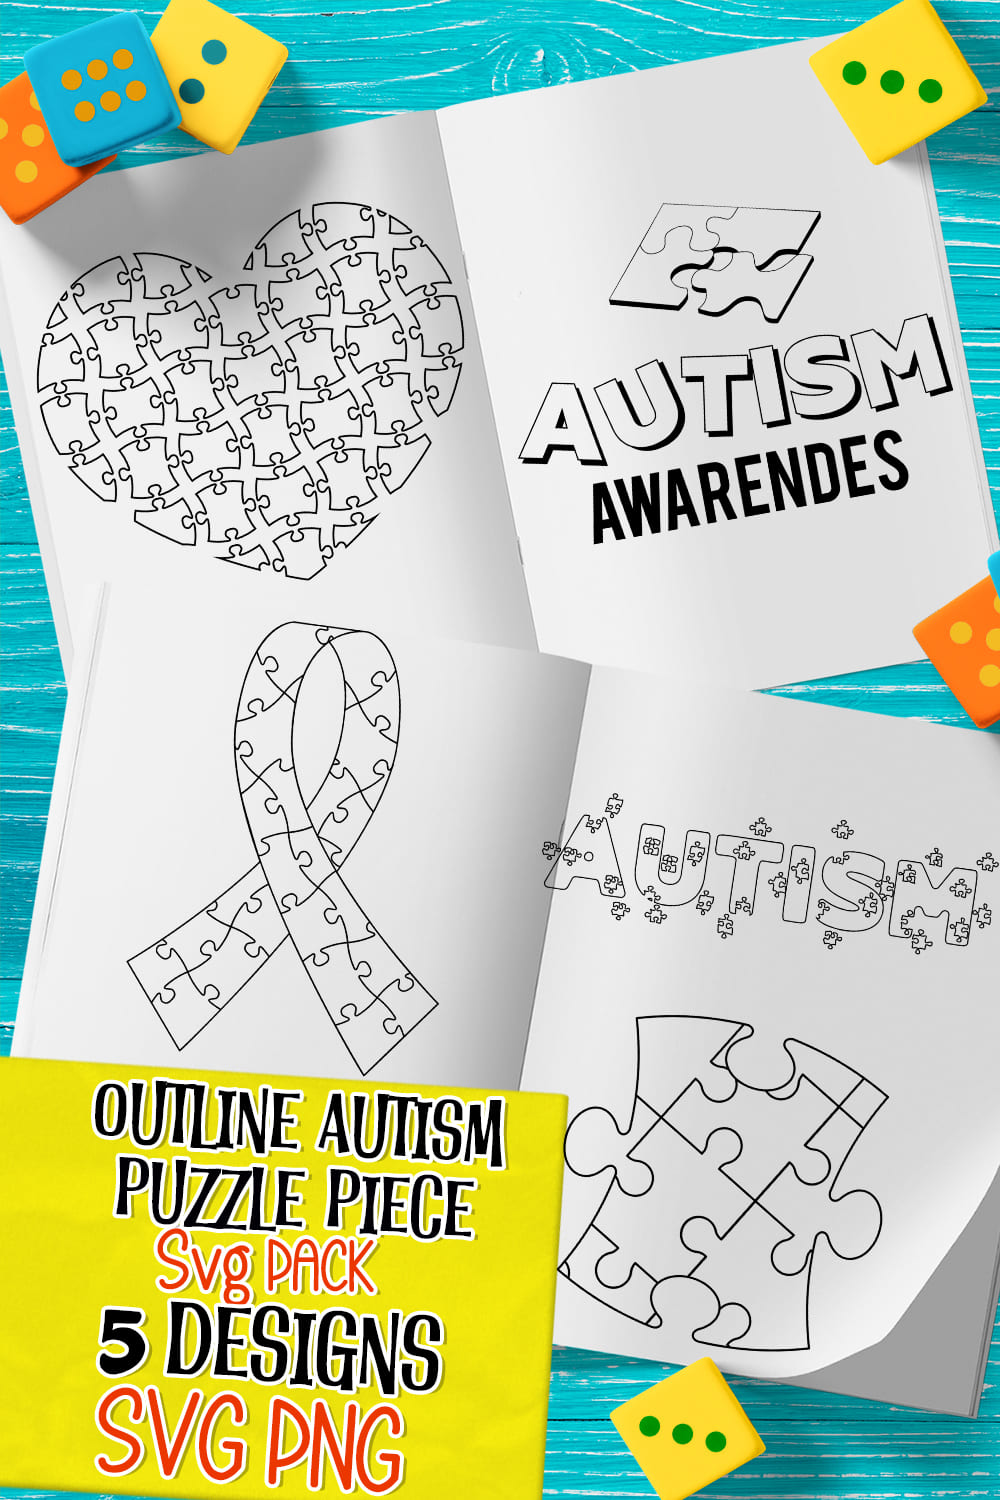 Outline autism puzzle piece svg - pinterest image preview.